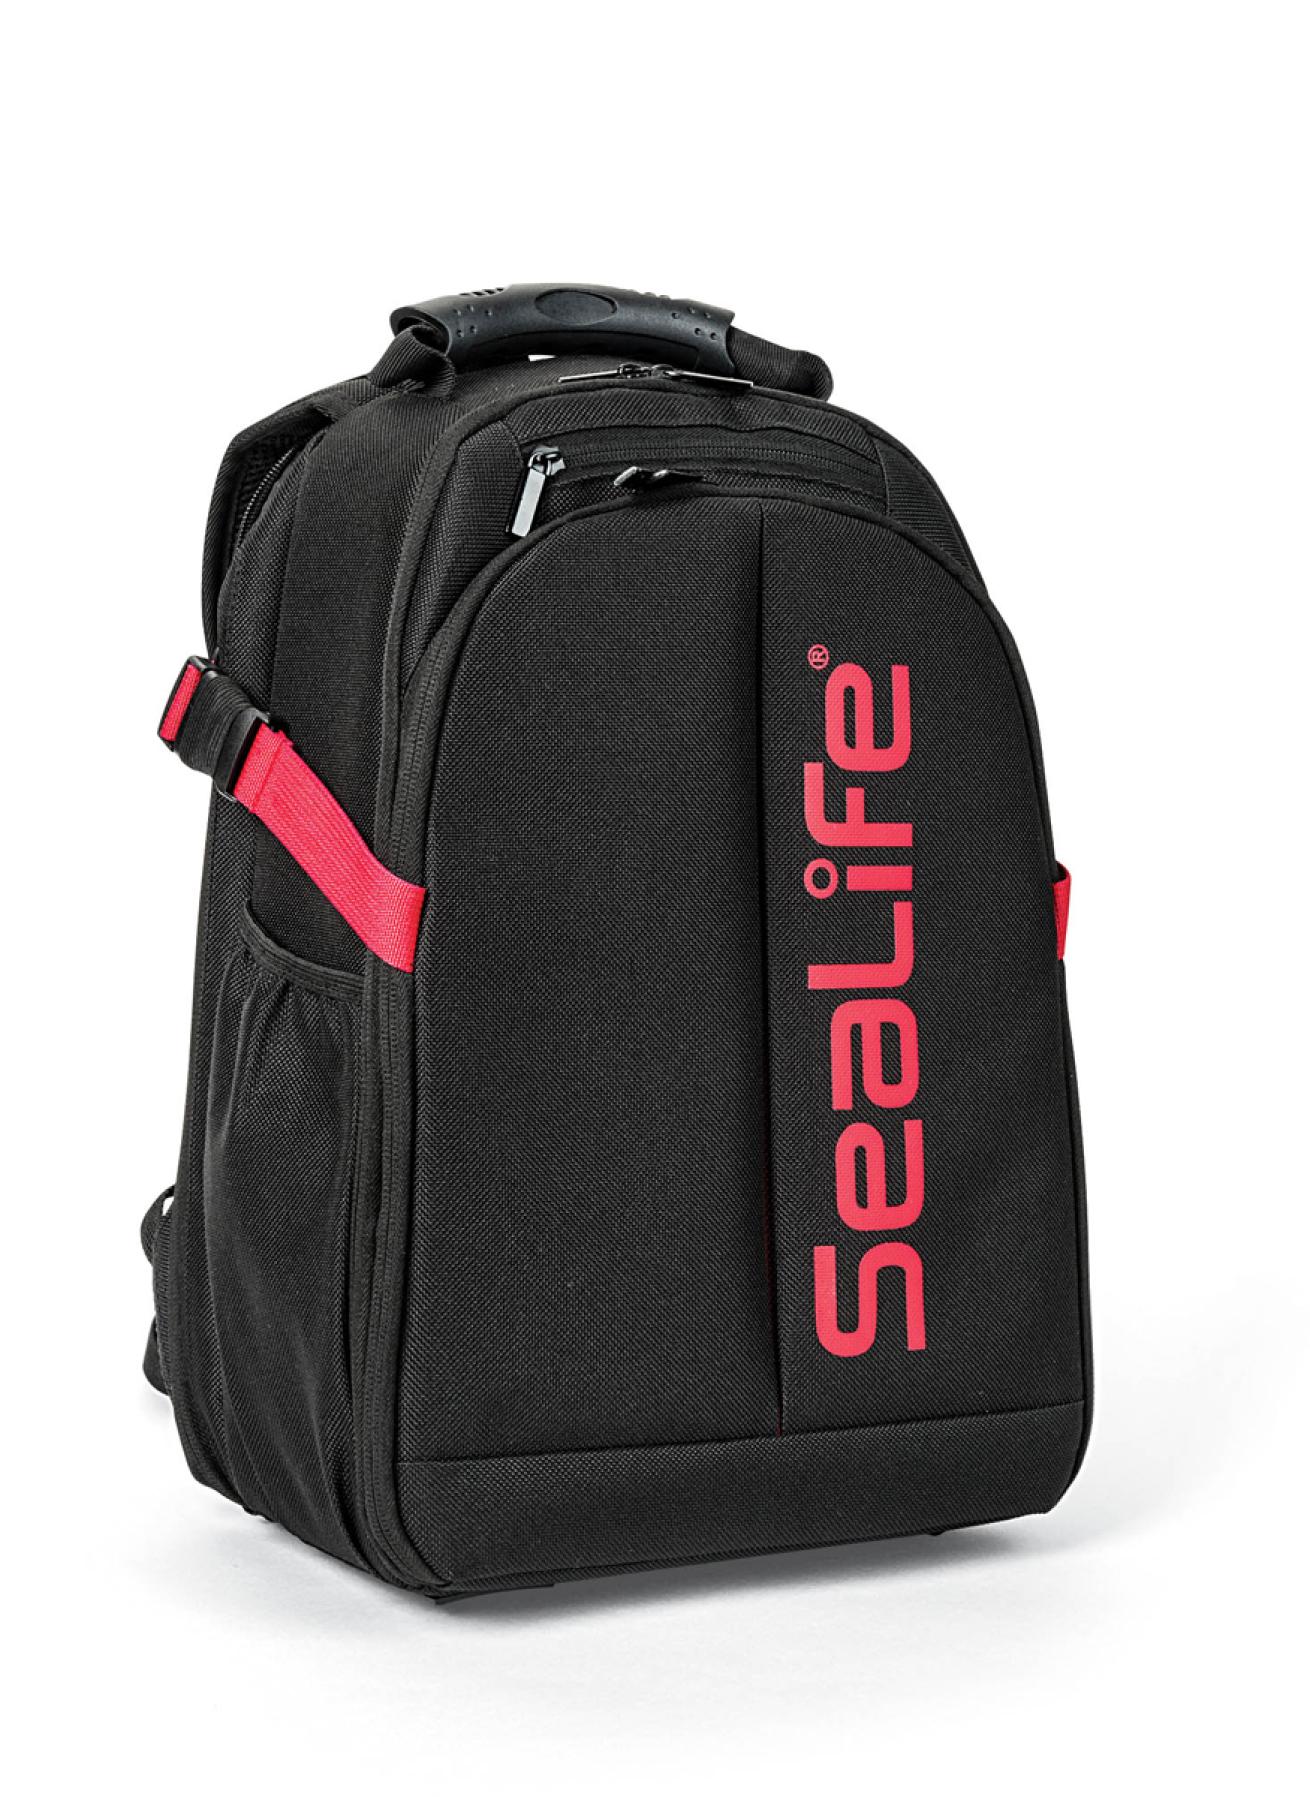 SeaLife Pro Photo Backpack 